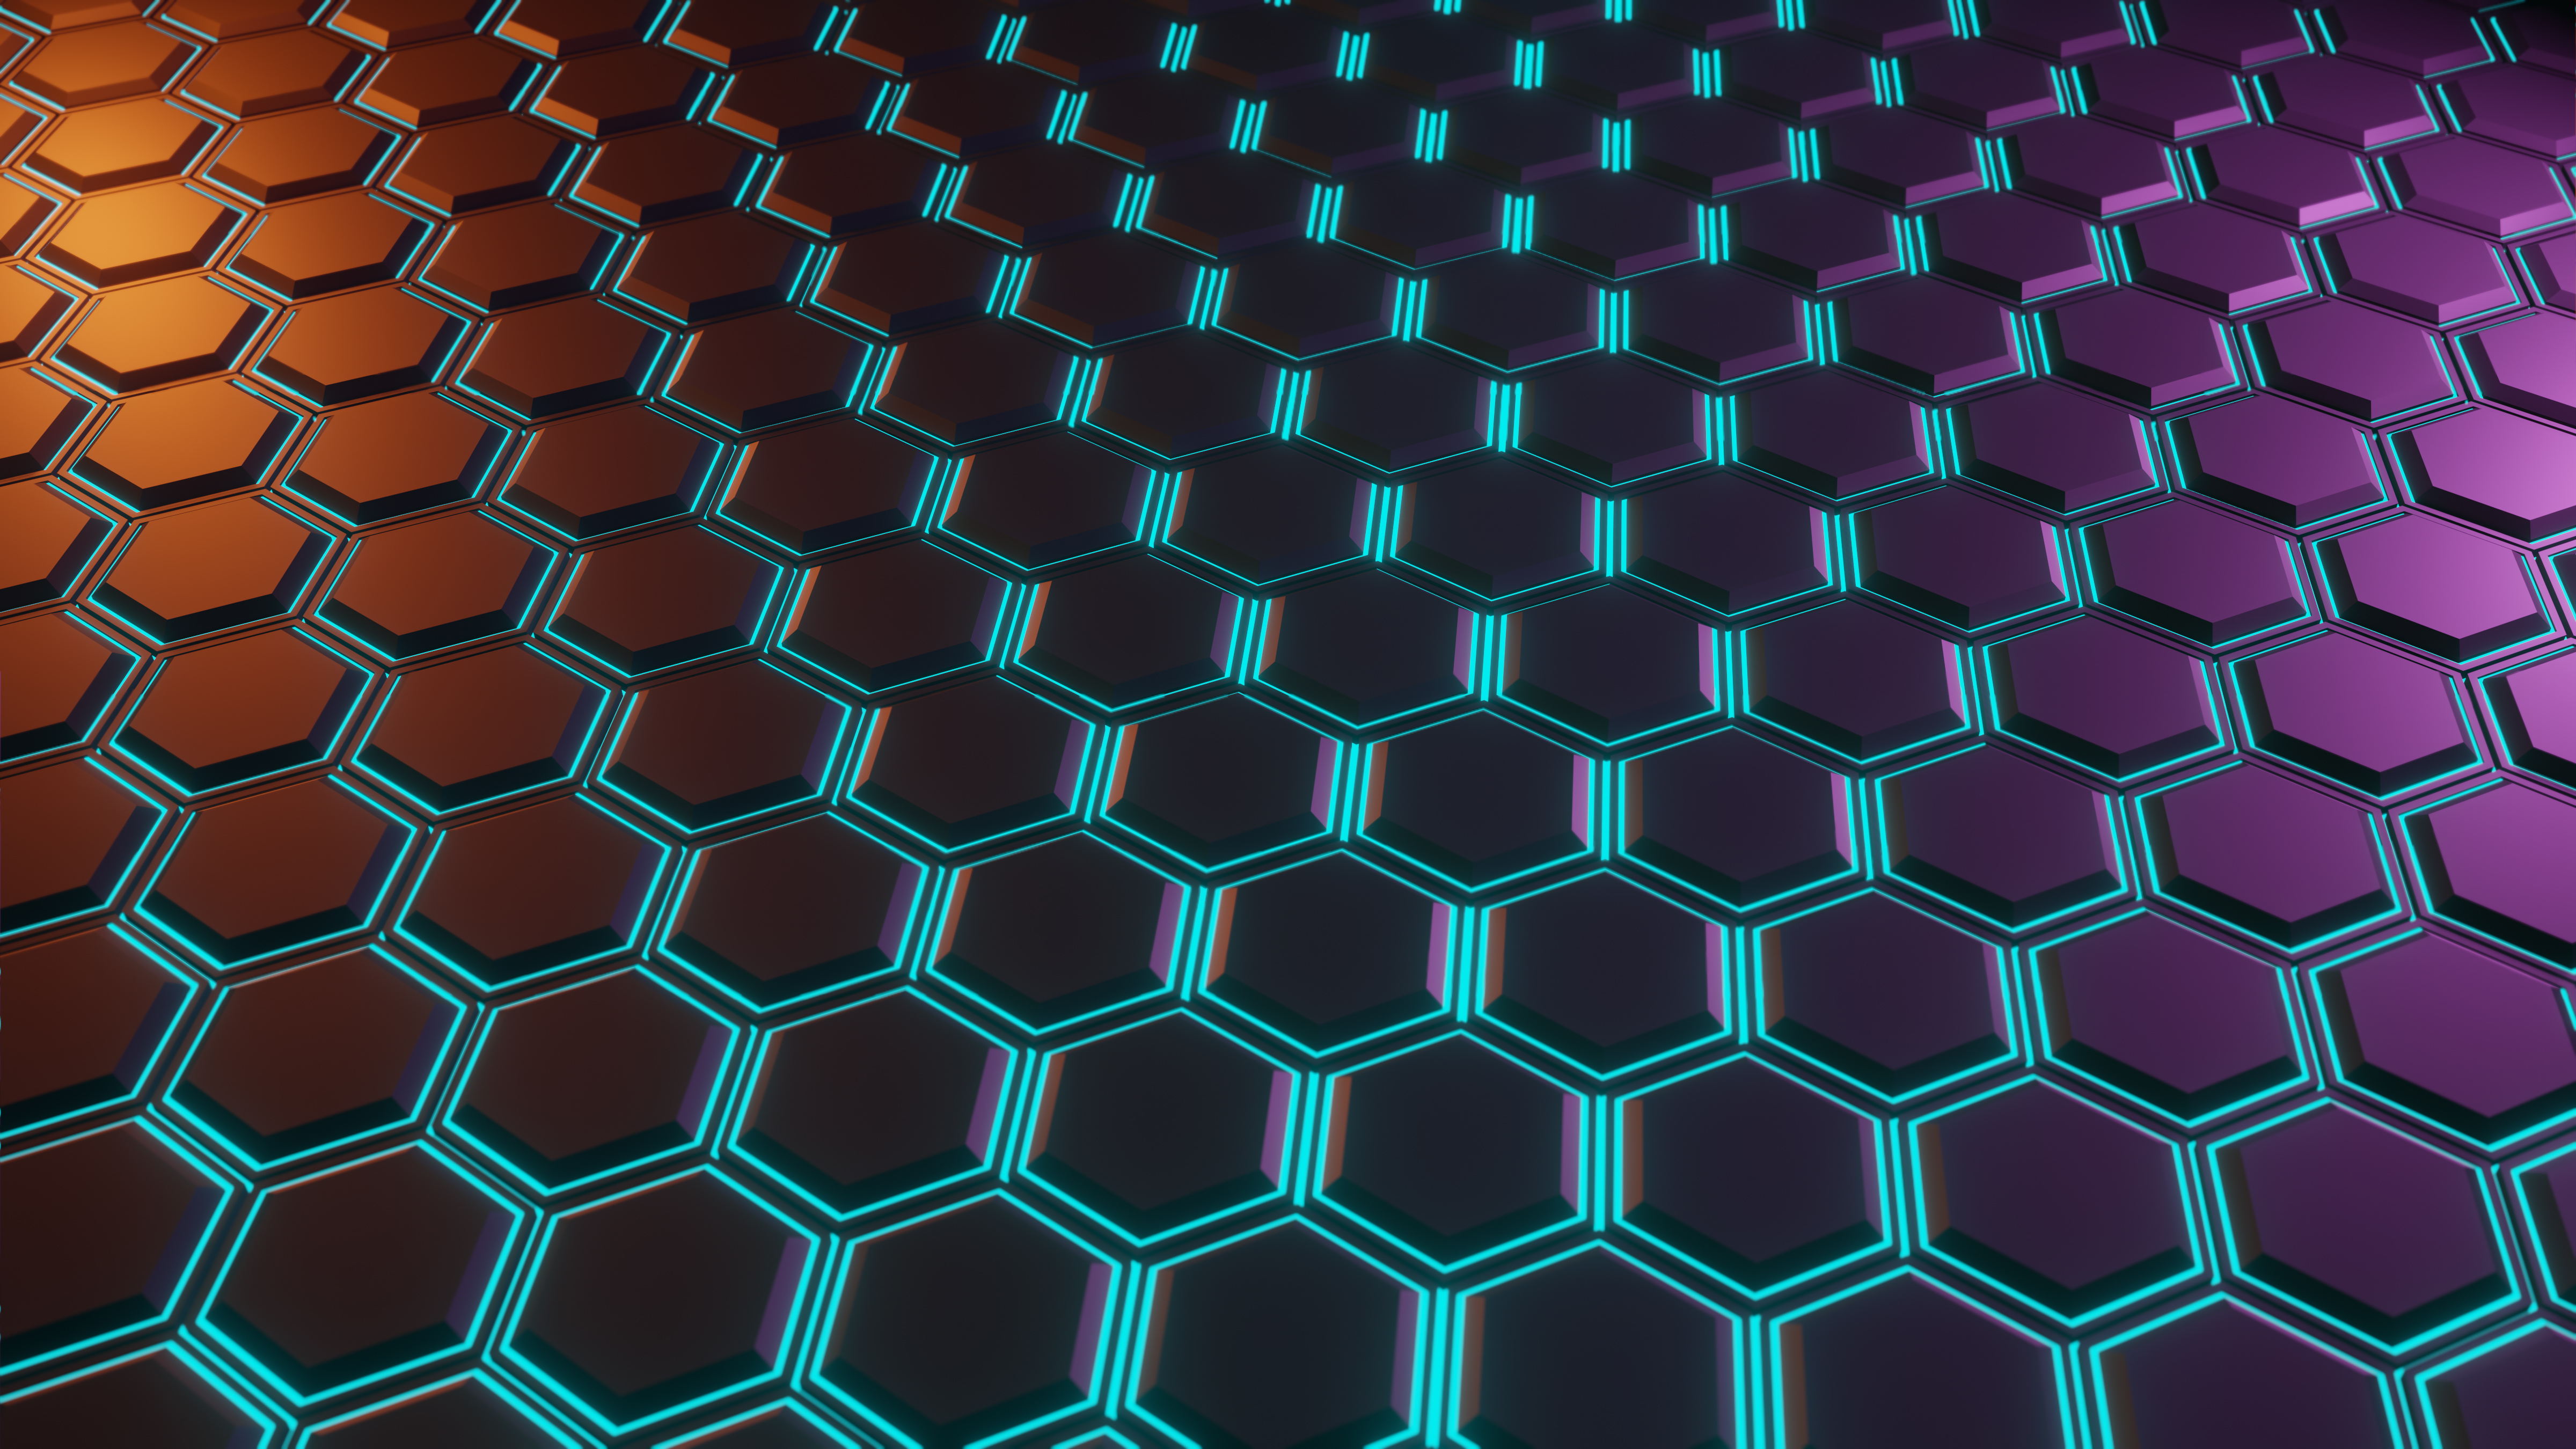 hexagon glowing tiles 4k 1602439587 - Hexagon Glowing Tiles 4k - Hexagon Glowing Tiles 4k wallpapers